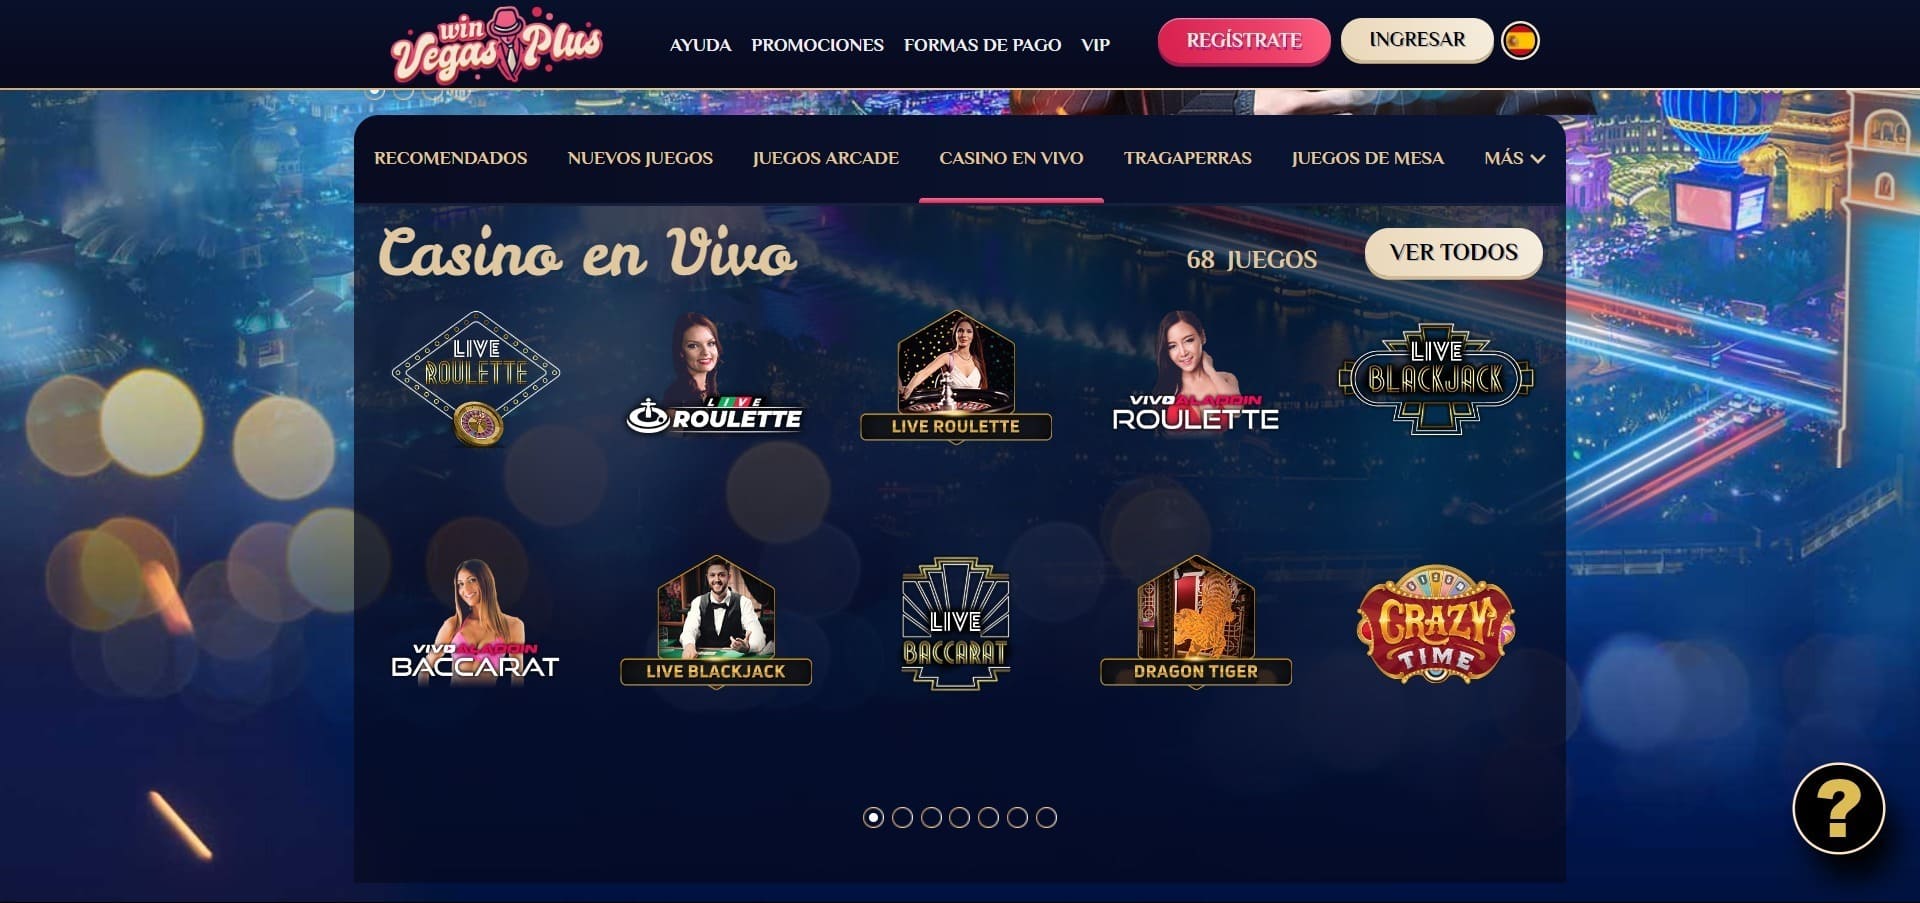 VegasPlus Casino en vivo